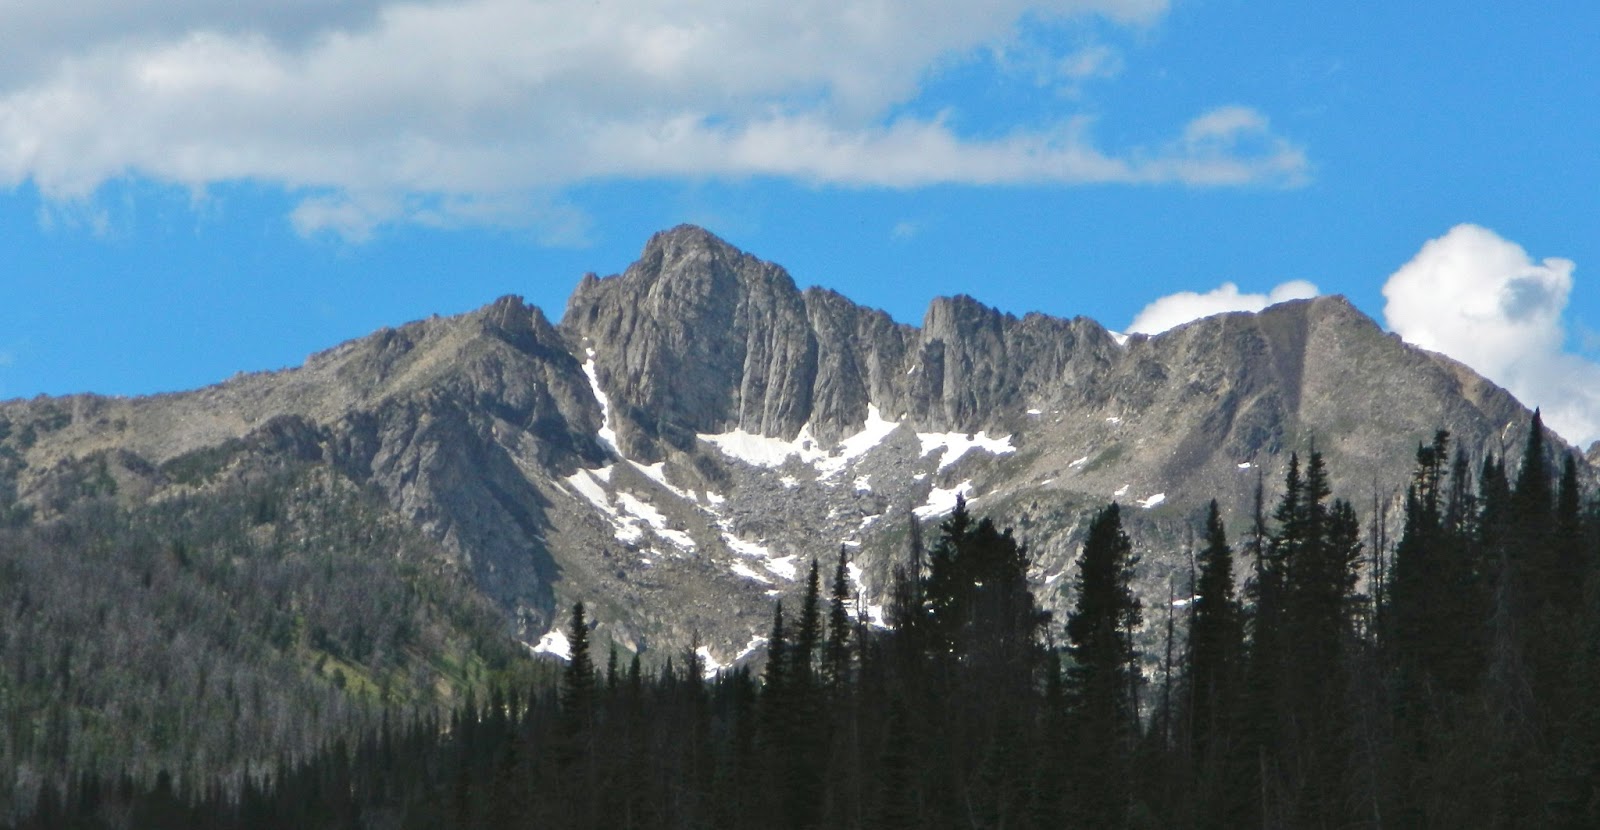 Forrest McCarthy: Spanish Peaks, Lee Metcalf Wilderness